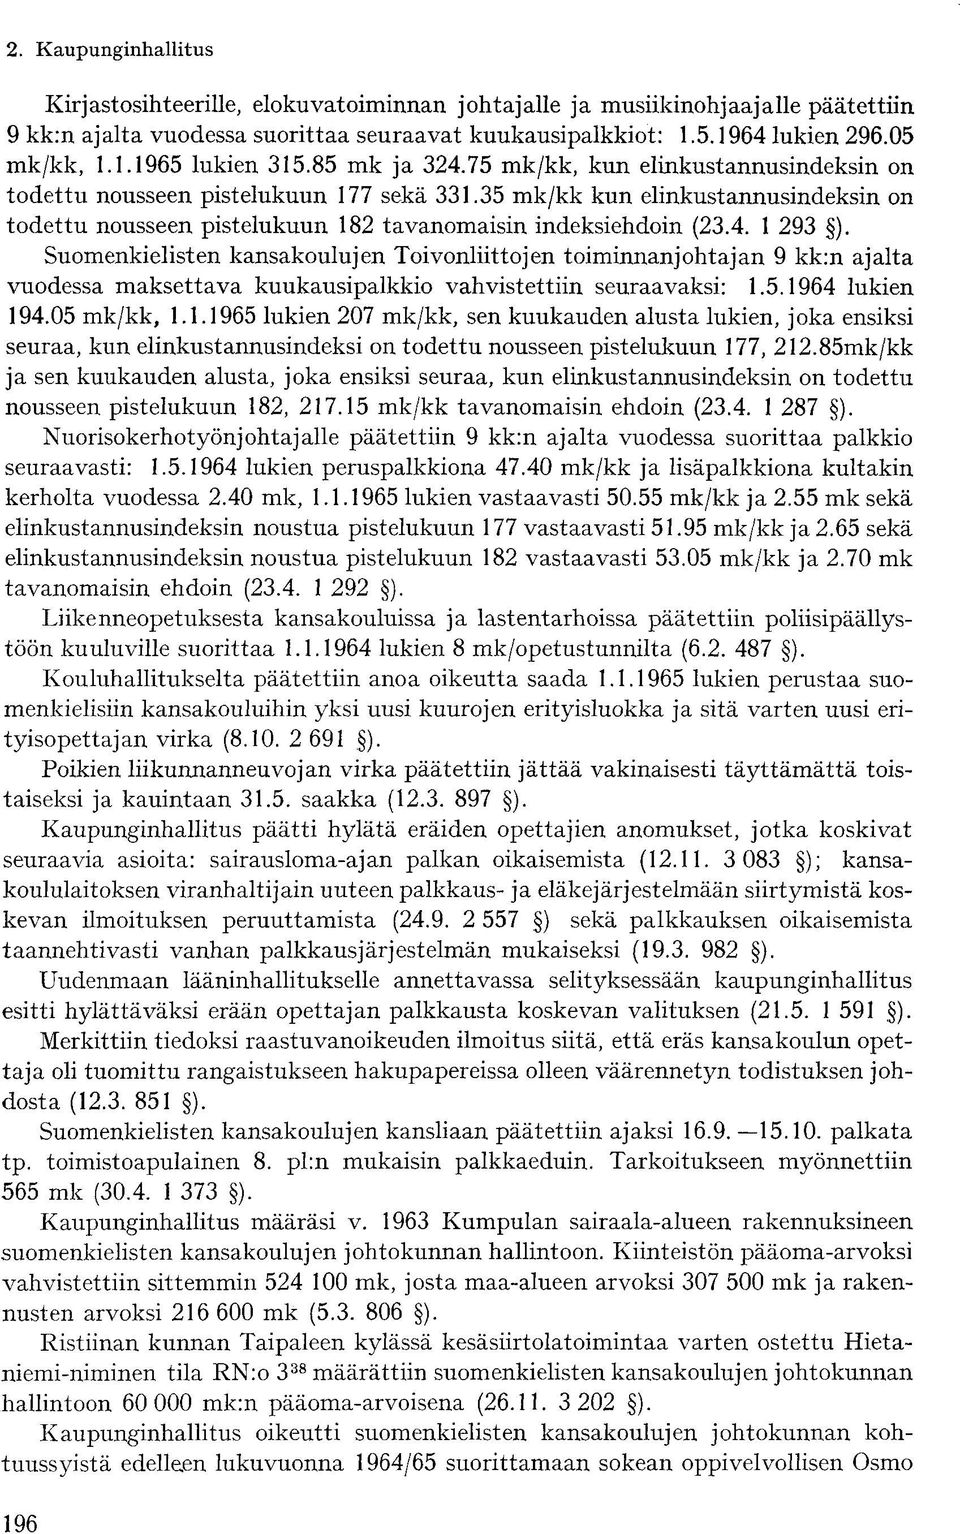 Suomenkielisten kansakoulujen Toivonliittojen toiminnanjohtajan 9 kk:n ajalta vuodessa maksettava kuukausipalkkio vahvistettiin seuraavaksi: 1.